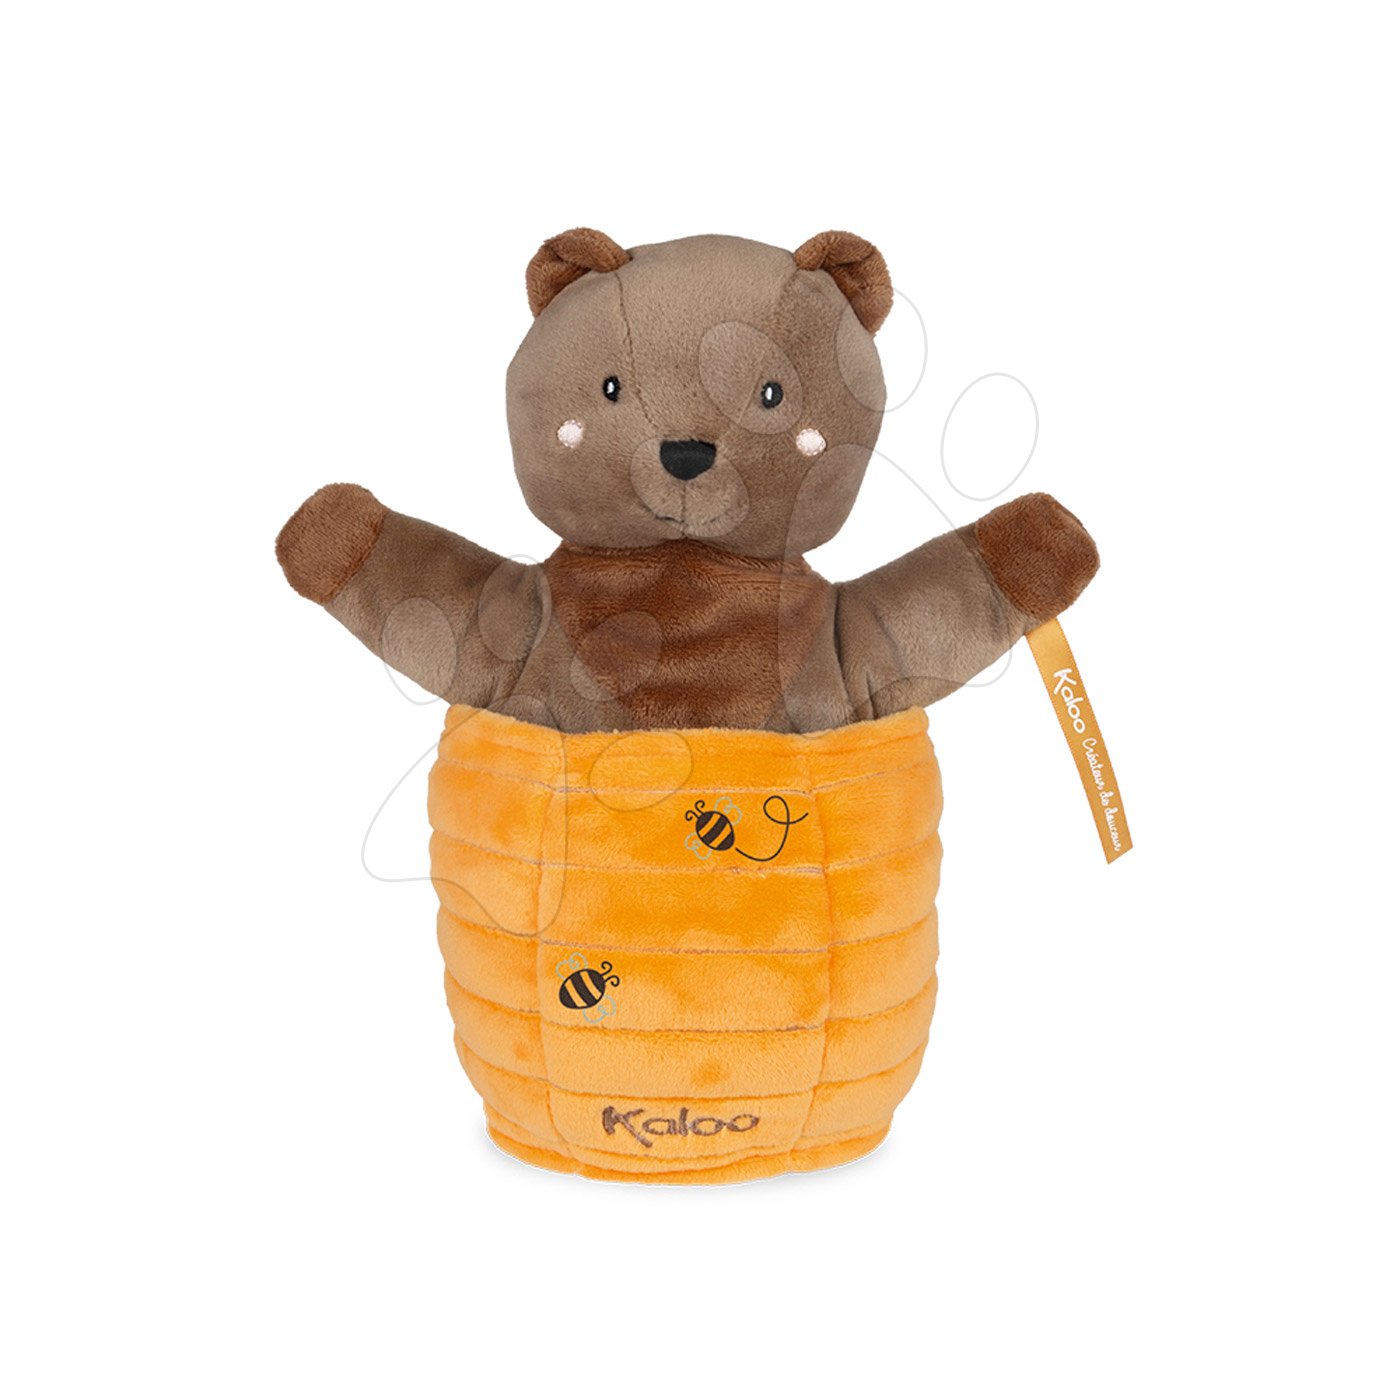 Plüss mackó kesztyűbáb Ted Bear Kachoo Kaloo meglepetés a kaptárban 25 cm legkisebbeknek 0 hó-tól